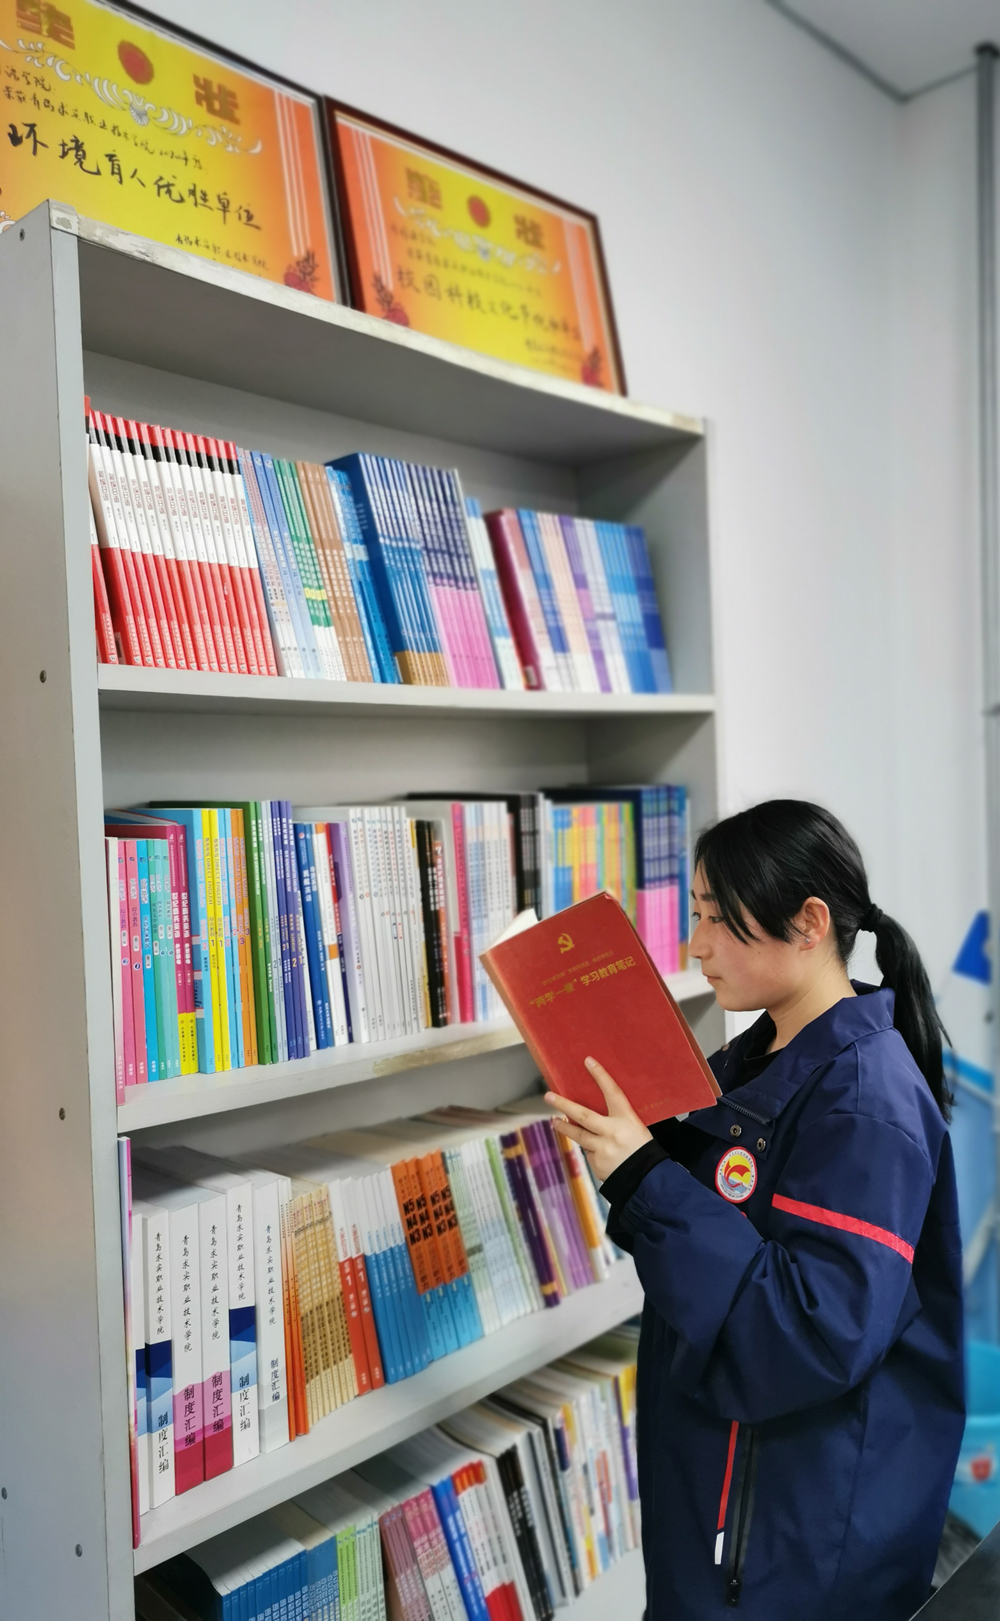 青岛求实职业技术学院组织“读党史、跟党走”读书活动